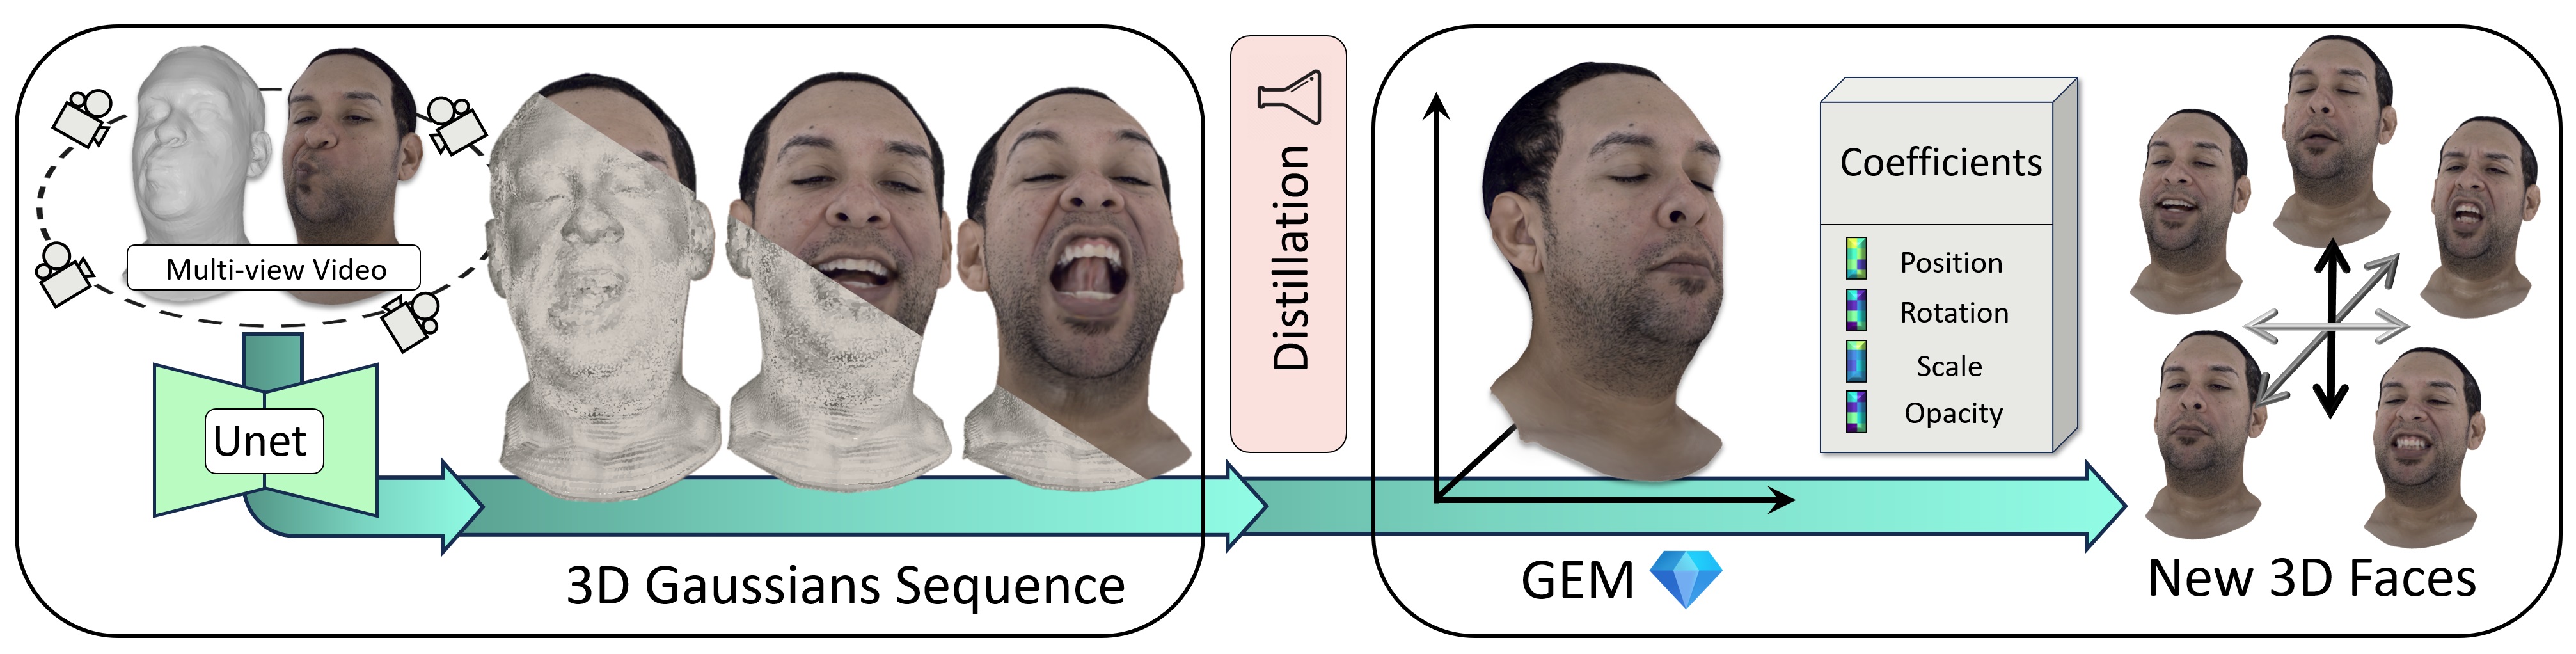 GEM - Gaussian Eigen Models for Human Heads